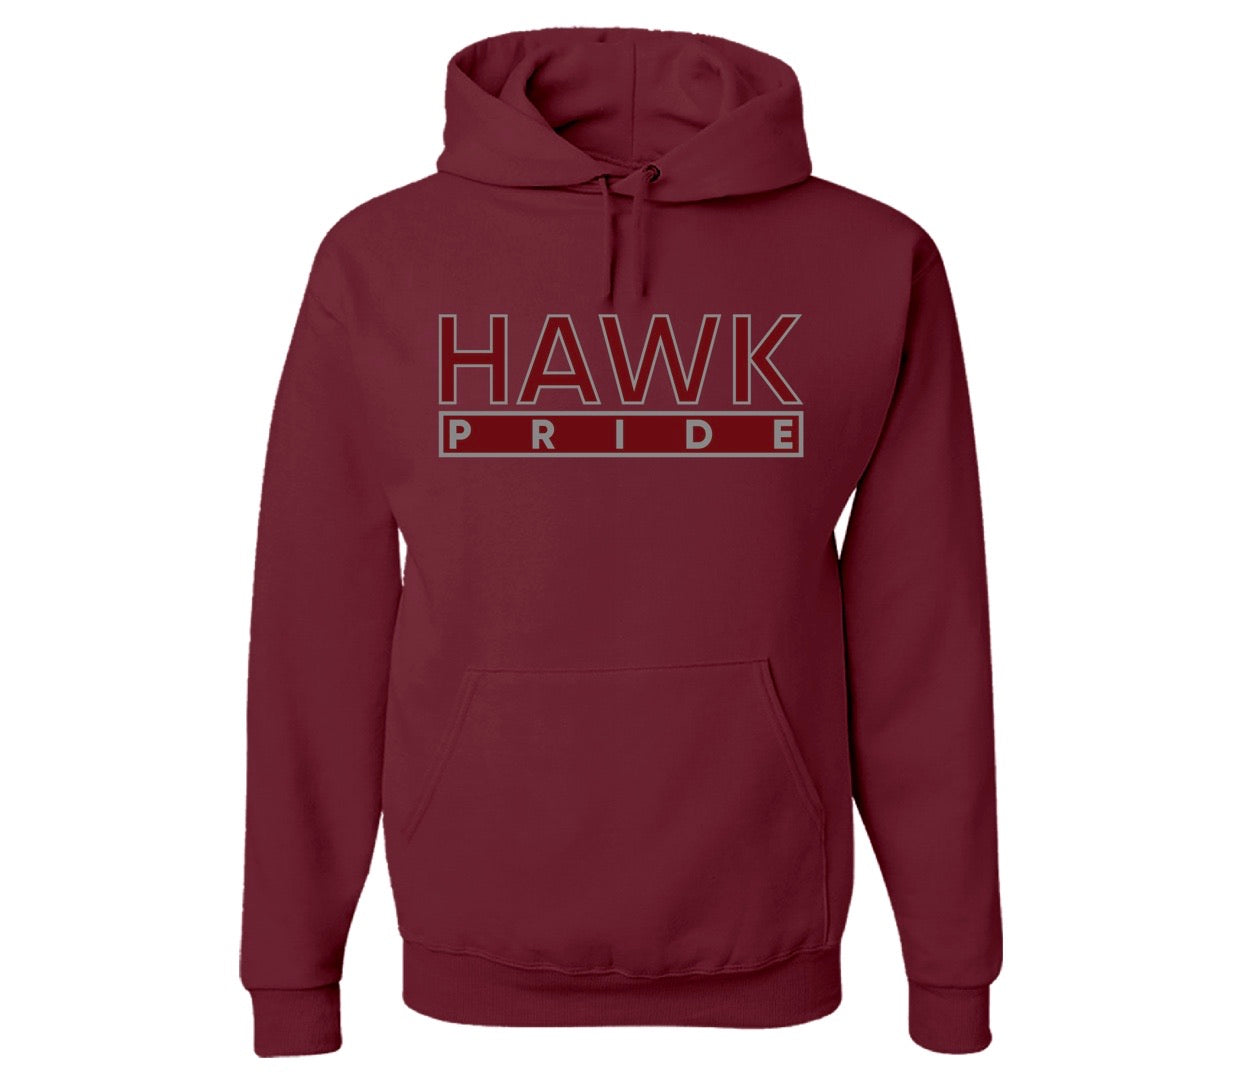 The “Hawk Pride” Hoodie/Crew in Maroon/Grey (MD)